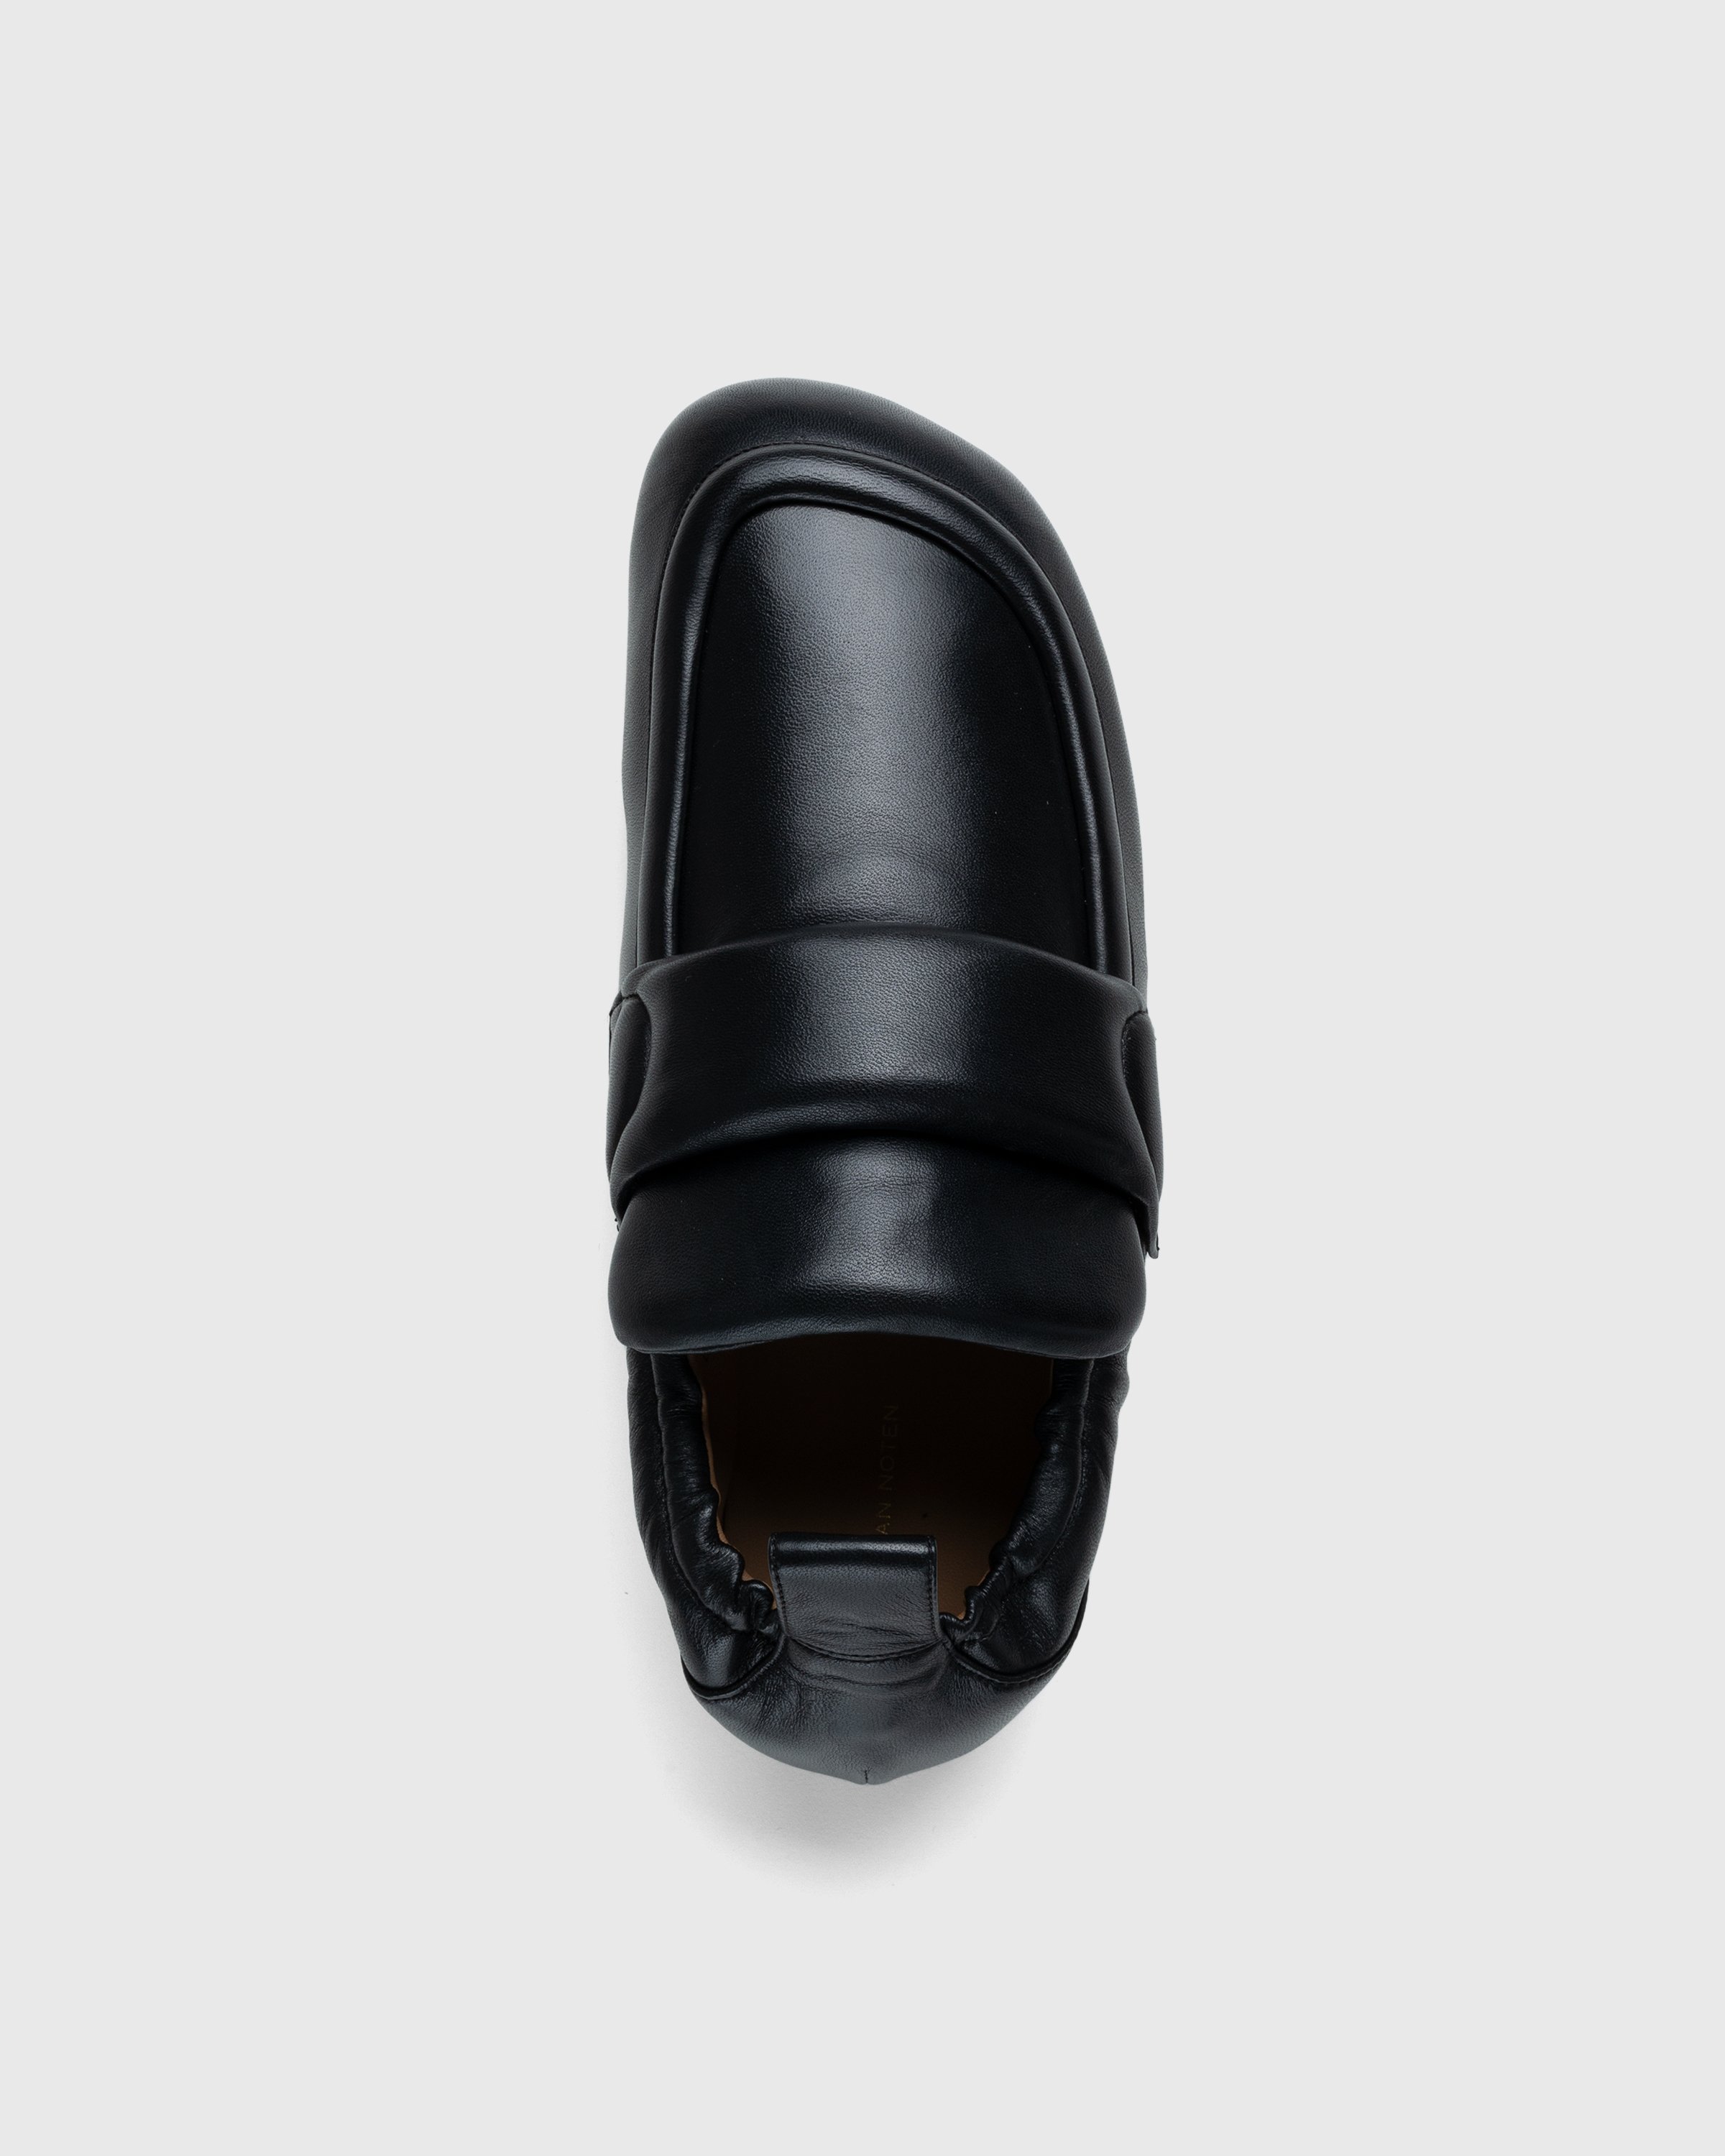 Dries van Noten - Padded Loafers - Footwear - Black - Image 5